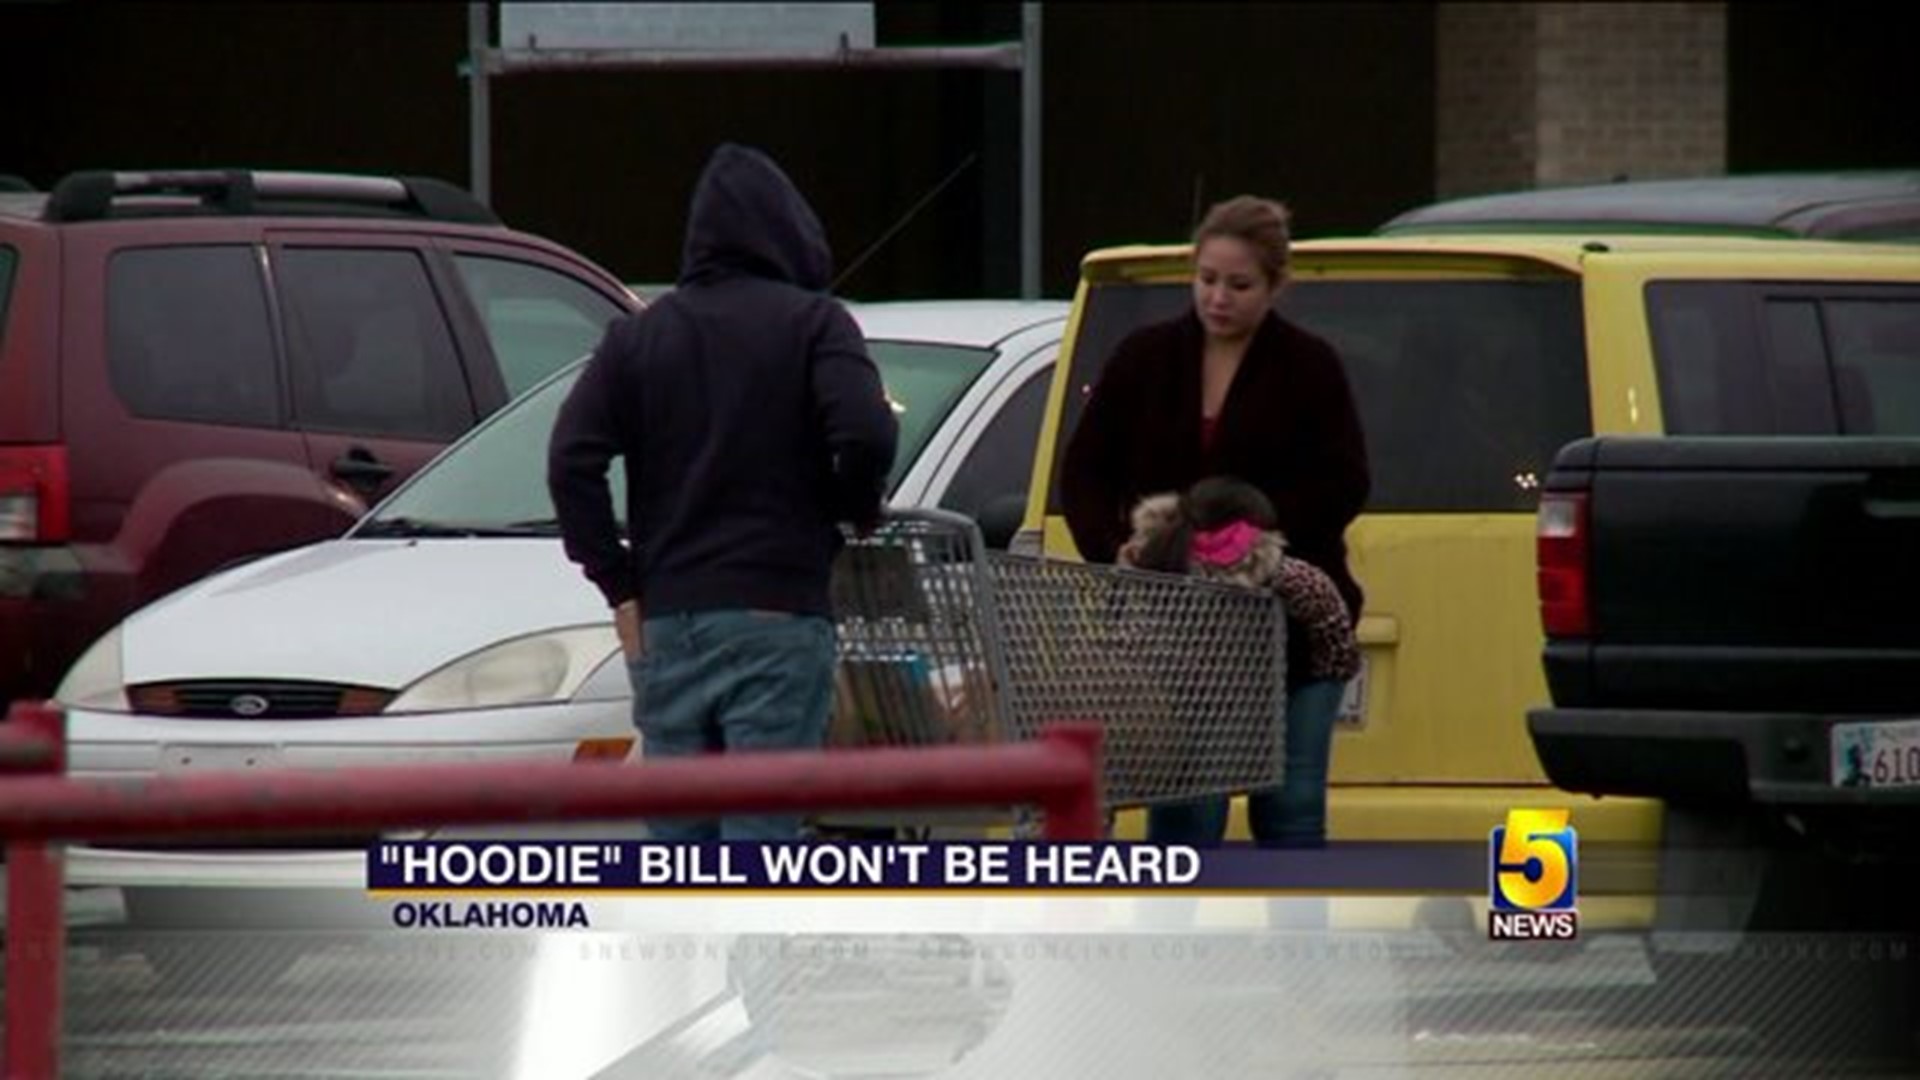 "Hoodie" Bill